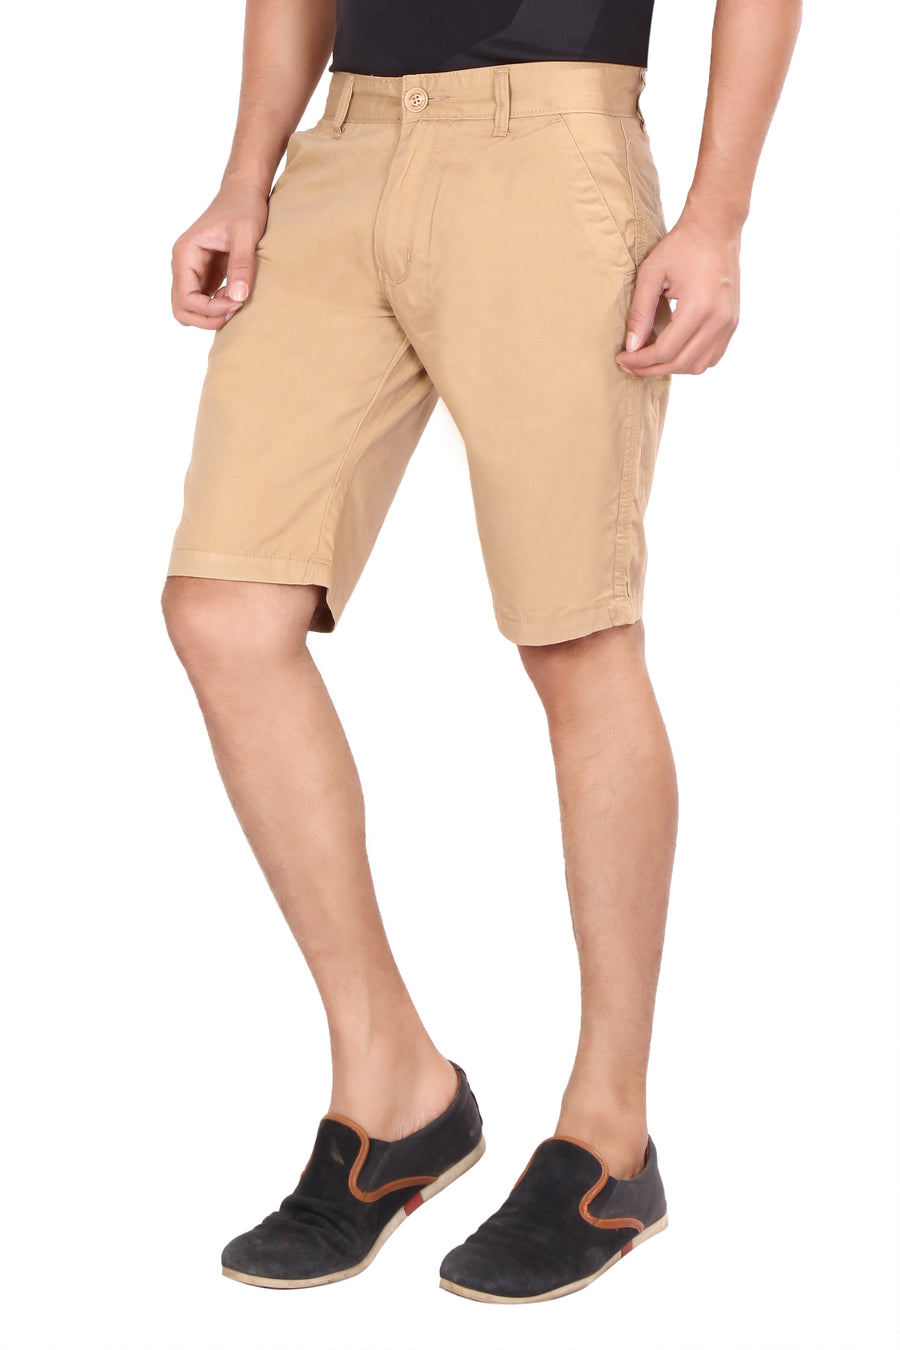 Men's Basic Khaki Shorts